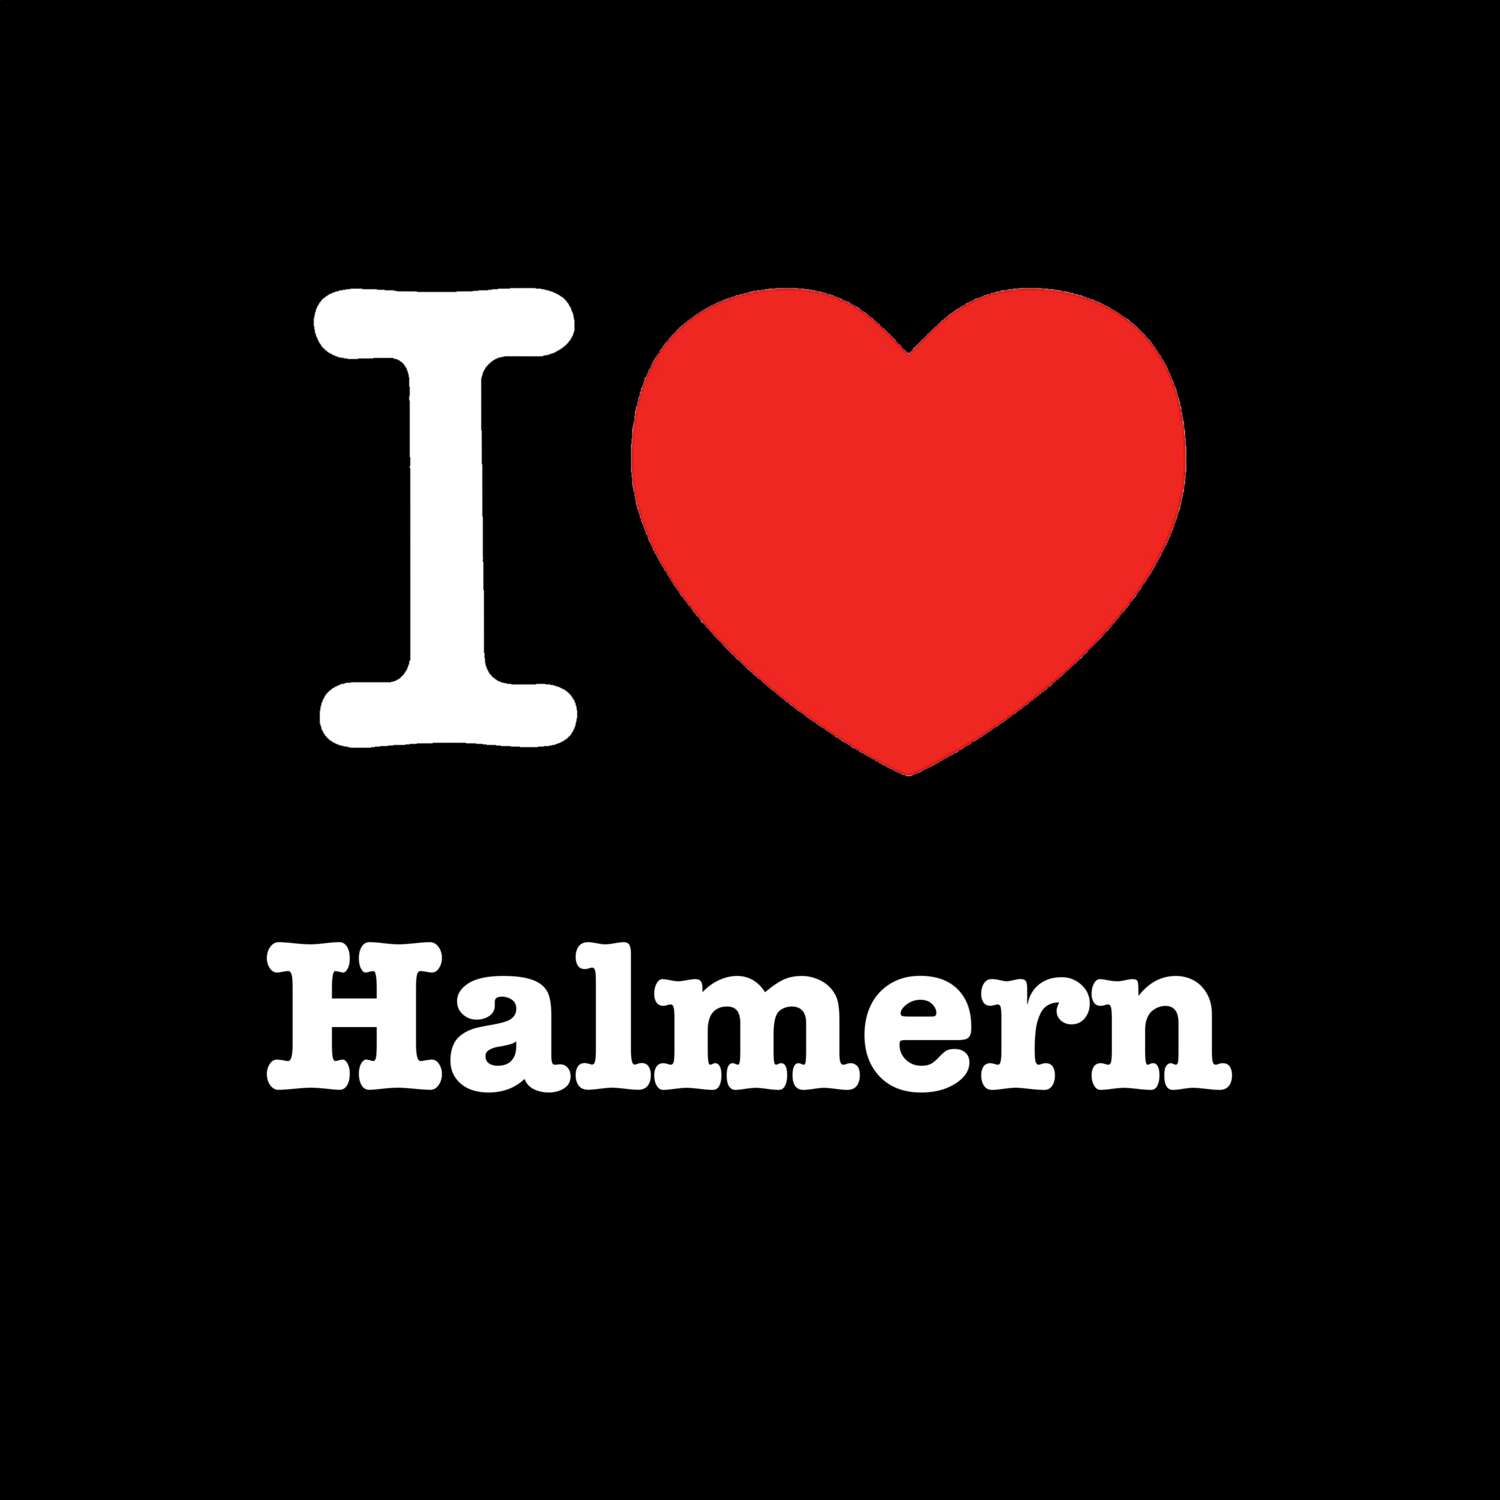 Halmern T-Shirt »I love«